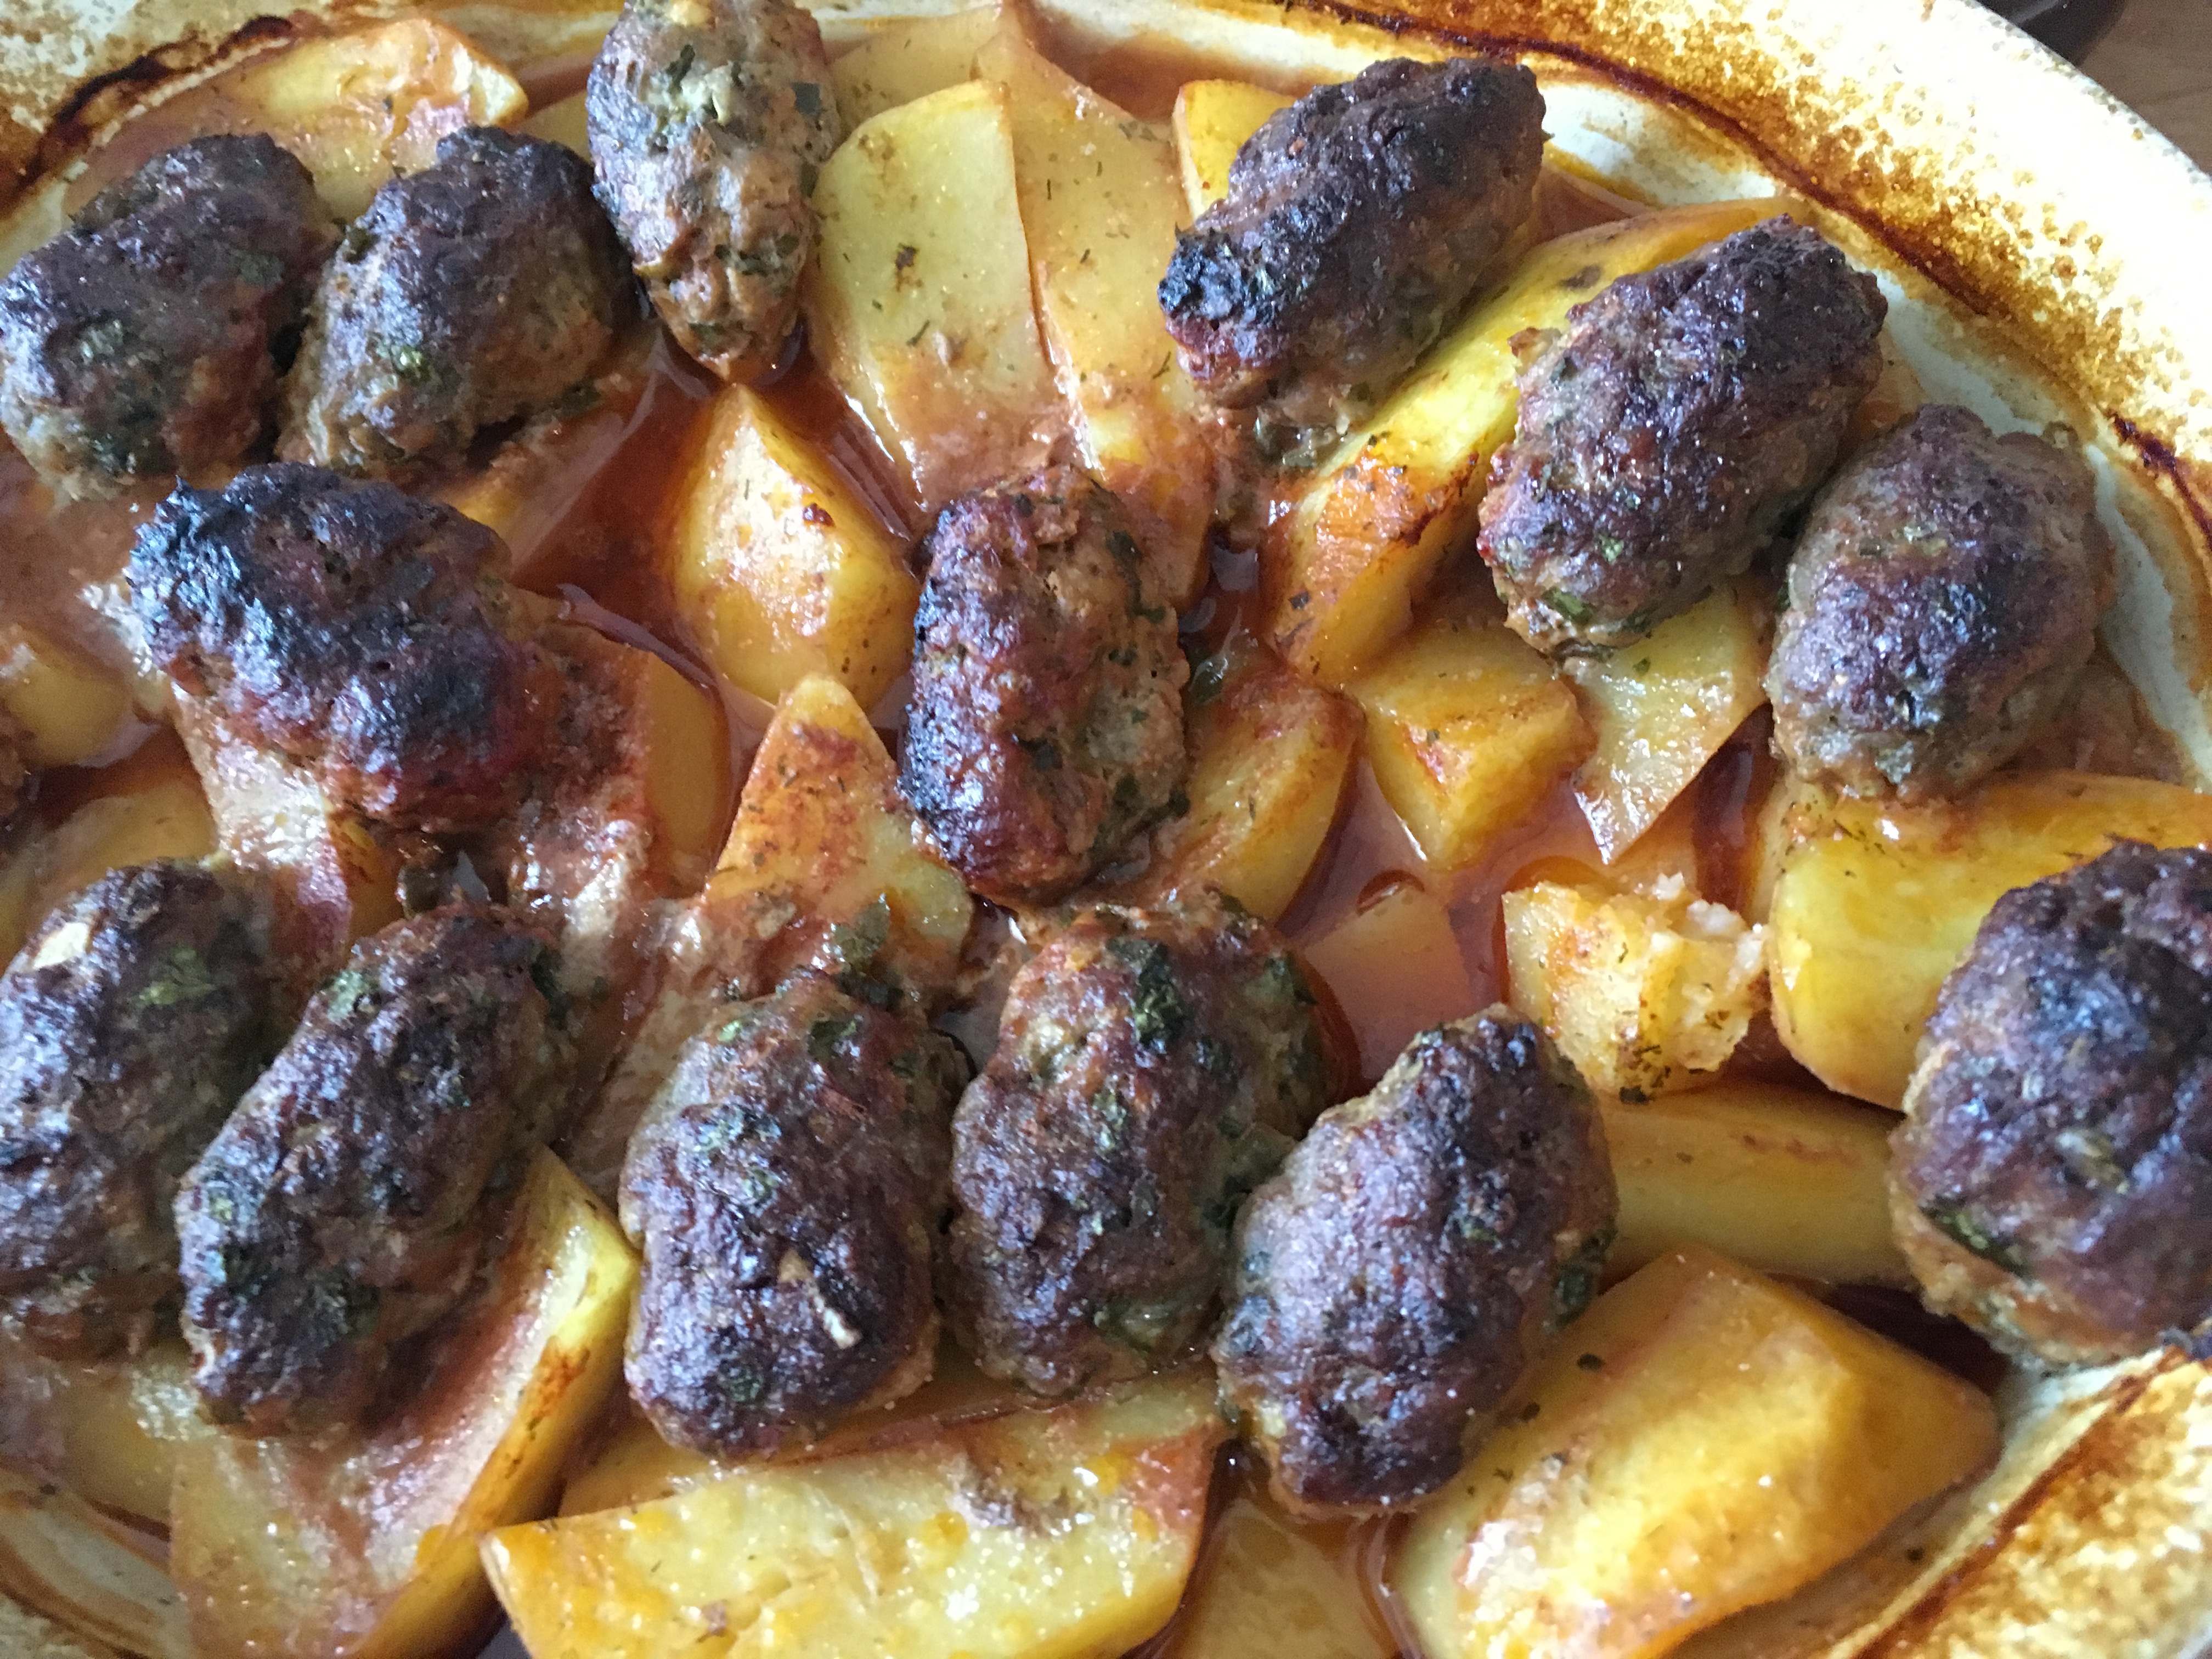 Izmir köftesi - chiftele turcesti din carne de miel